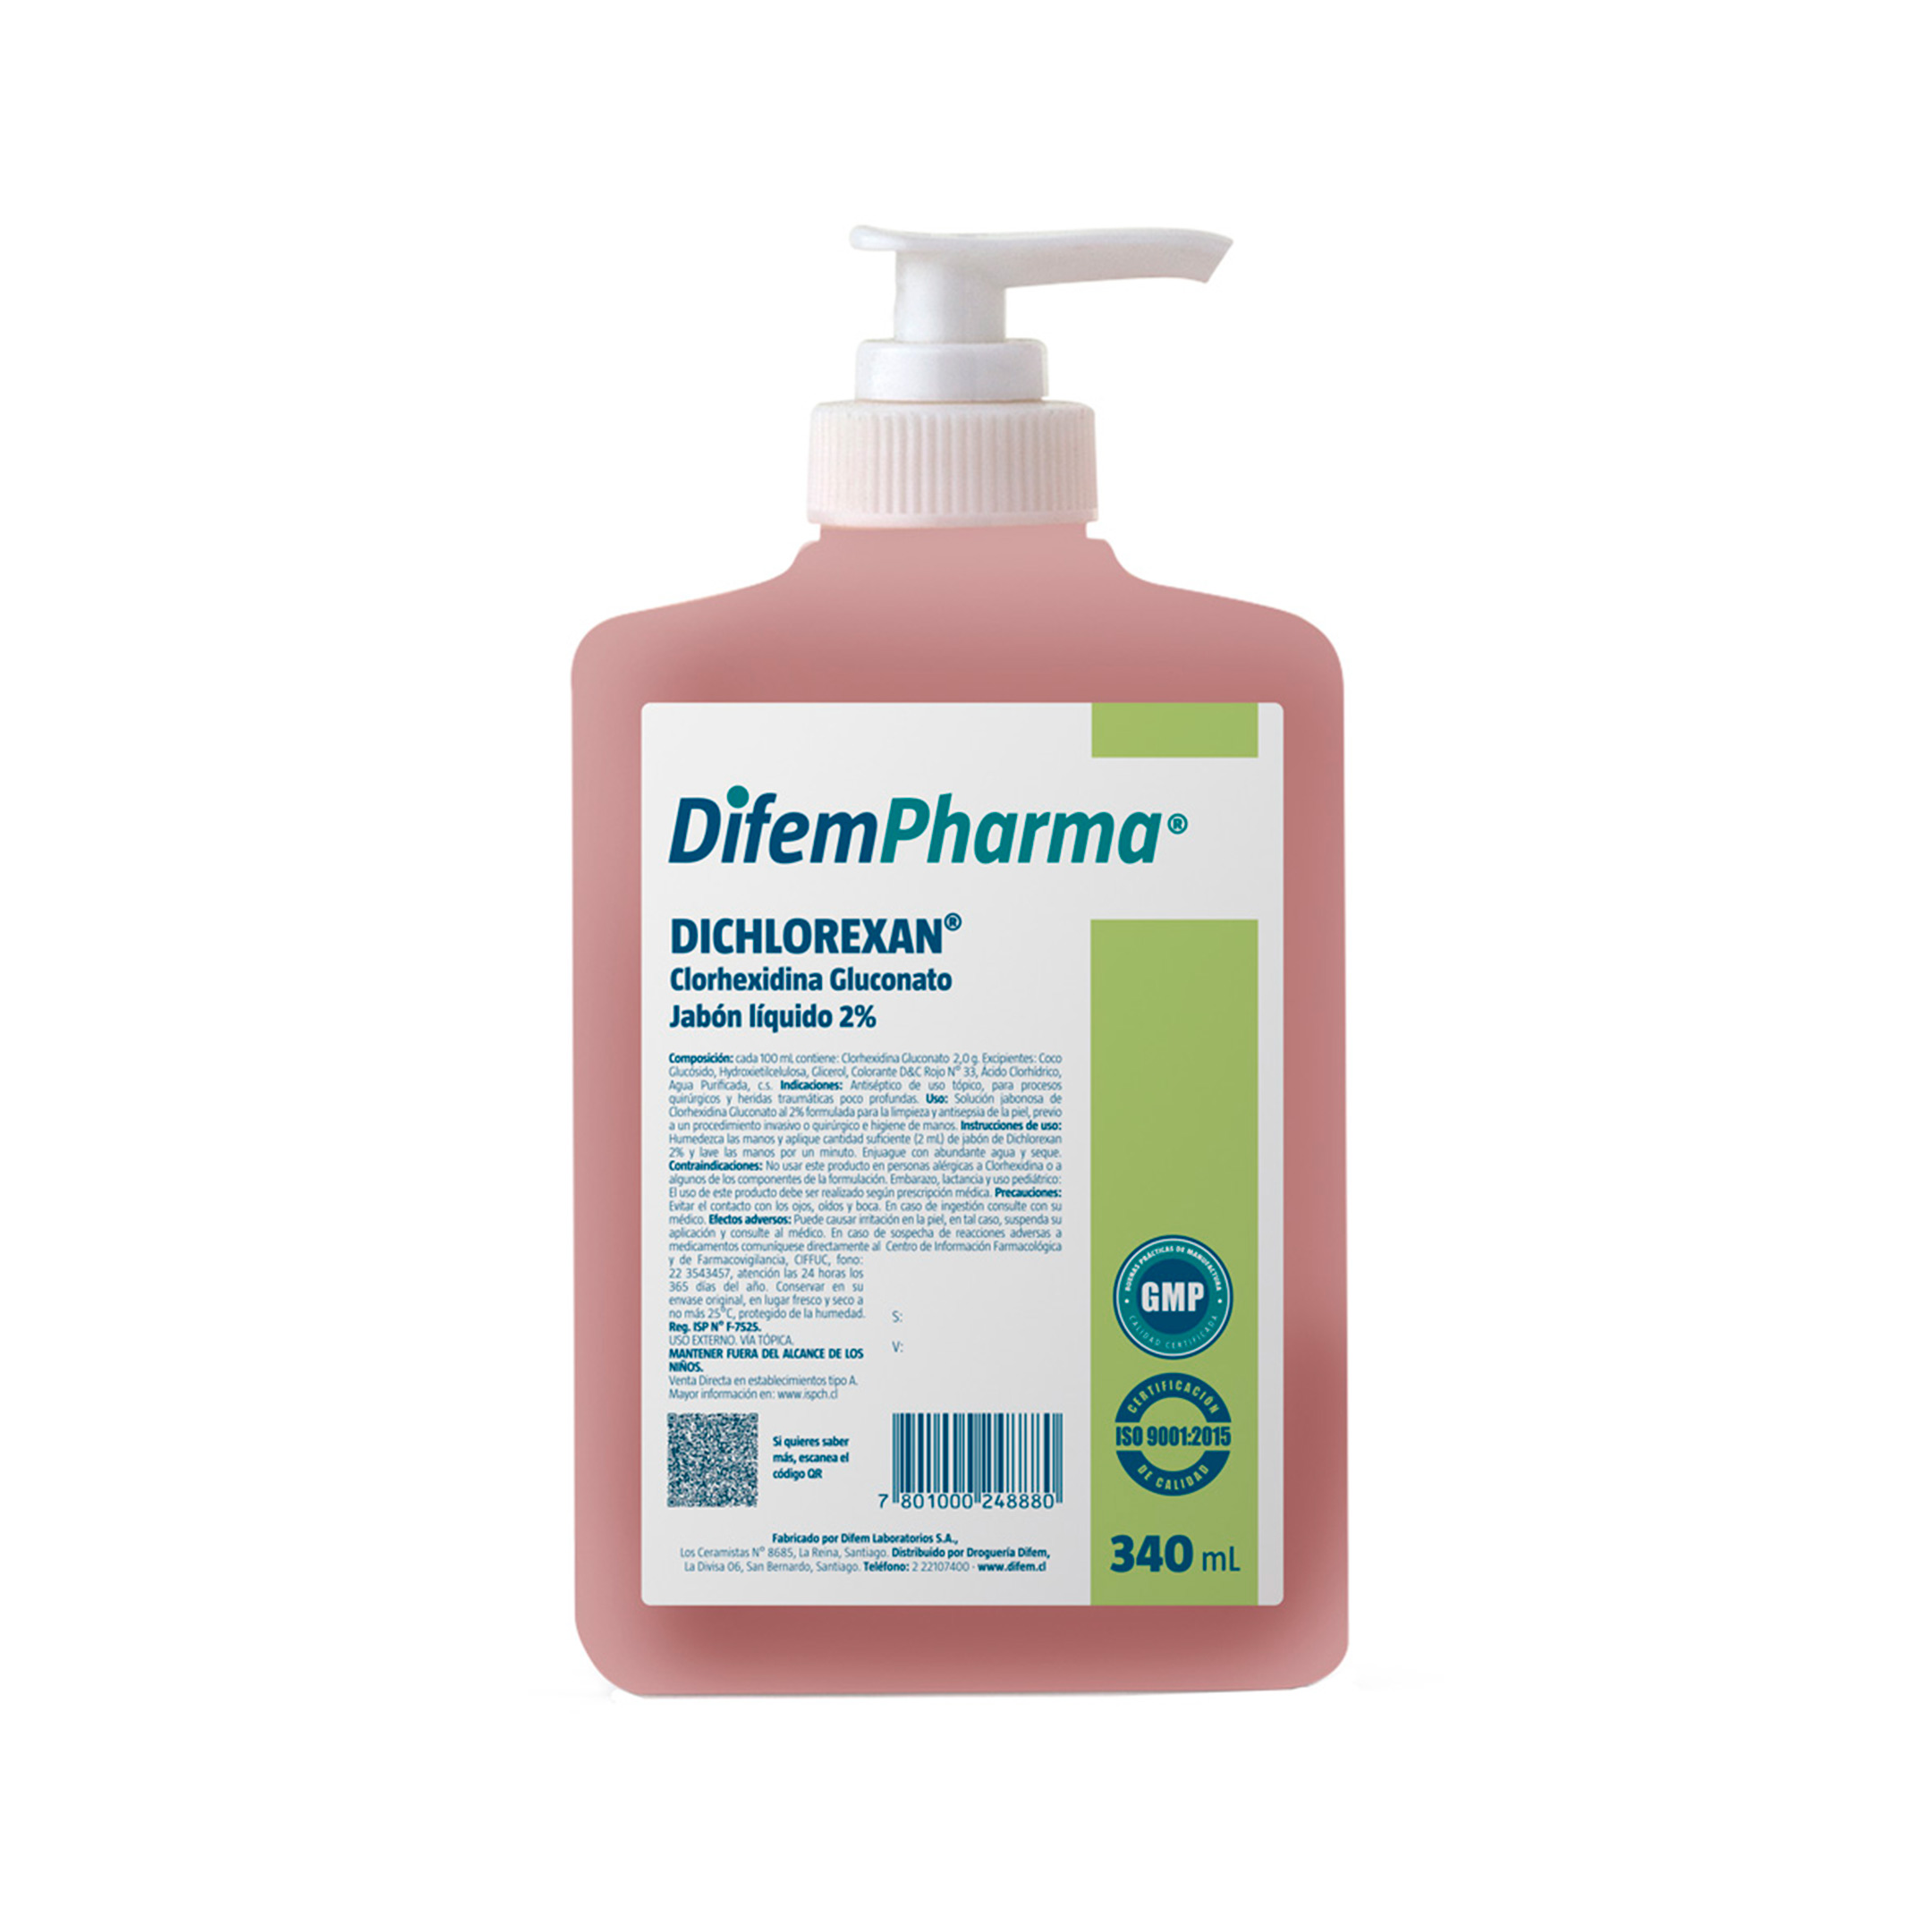 Dichlorexan Jabón Líquido 2% es un antiséptico formulado a base de Clorhexidina Gluconato, lo que le confiere una potente acción antimicrobiana, con efecto residual de 6 horas. Producto Hipoalergénico.